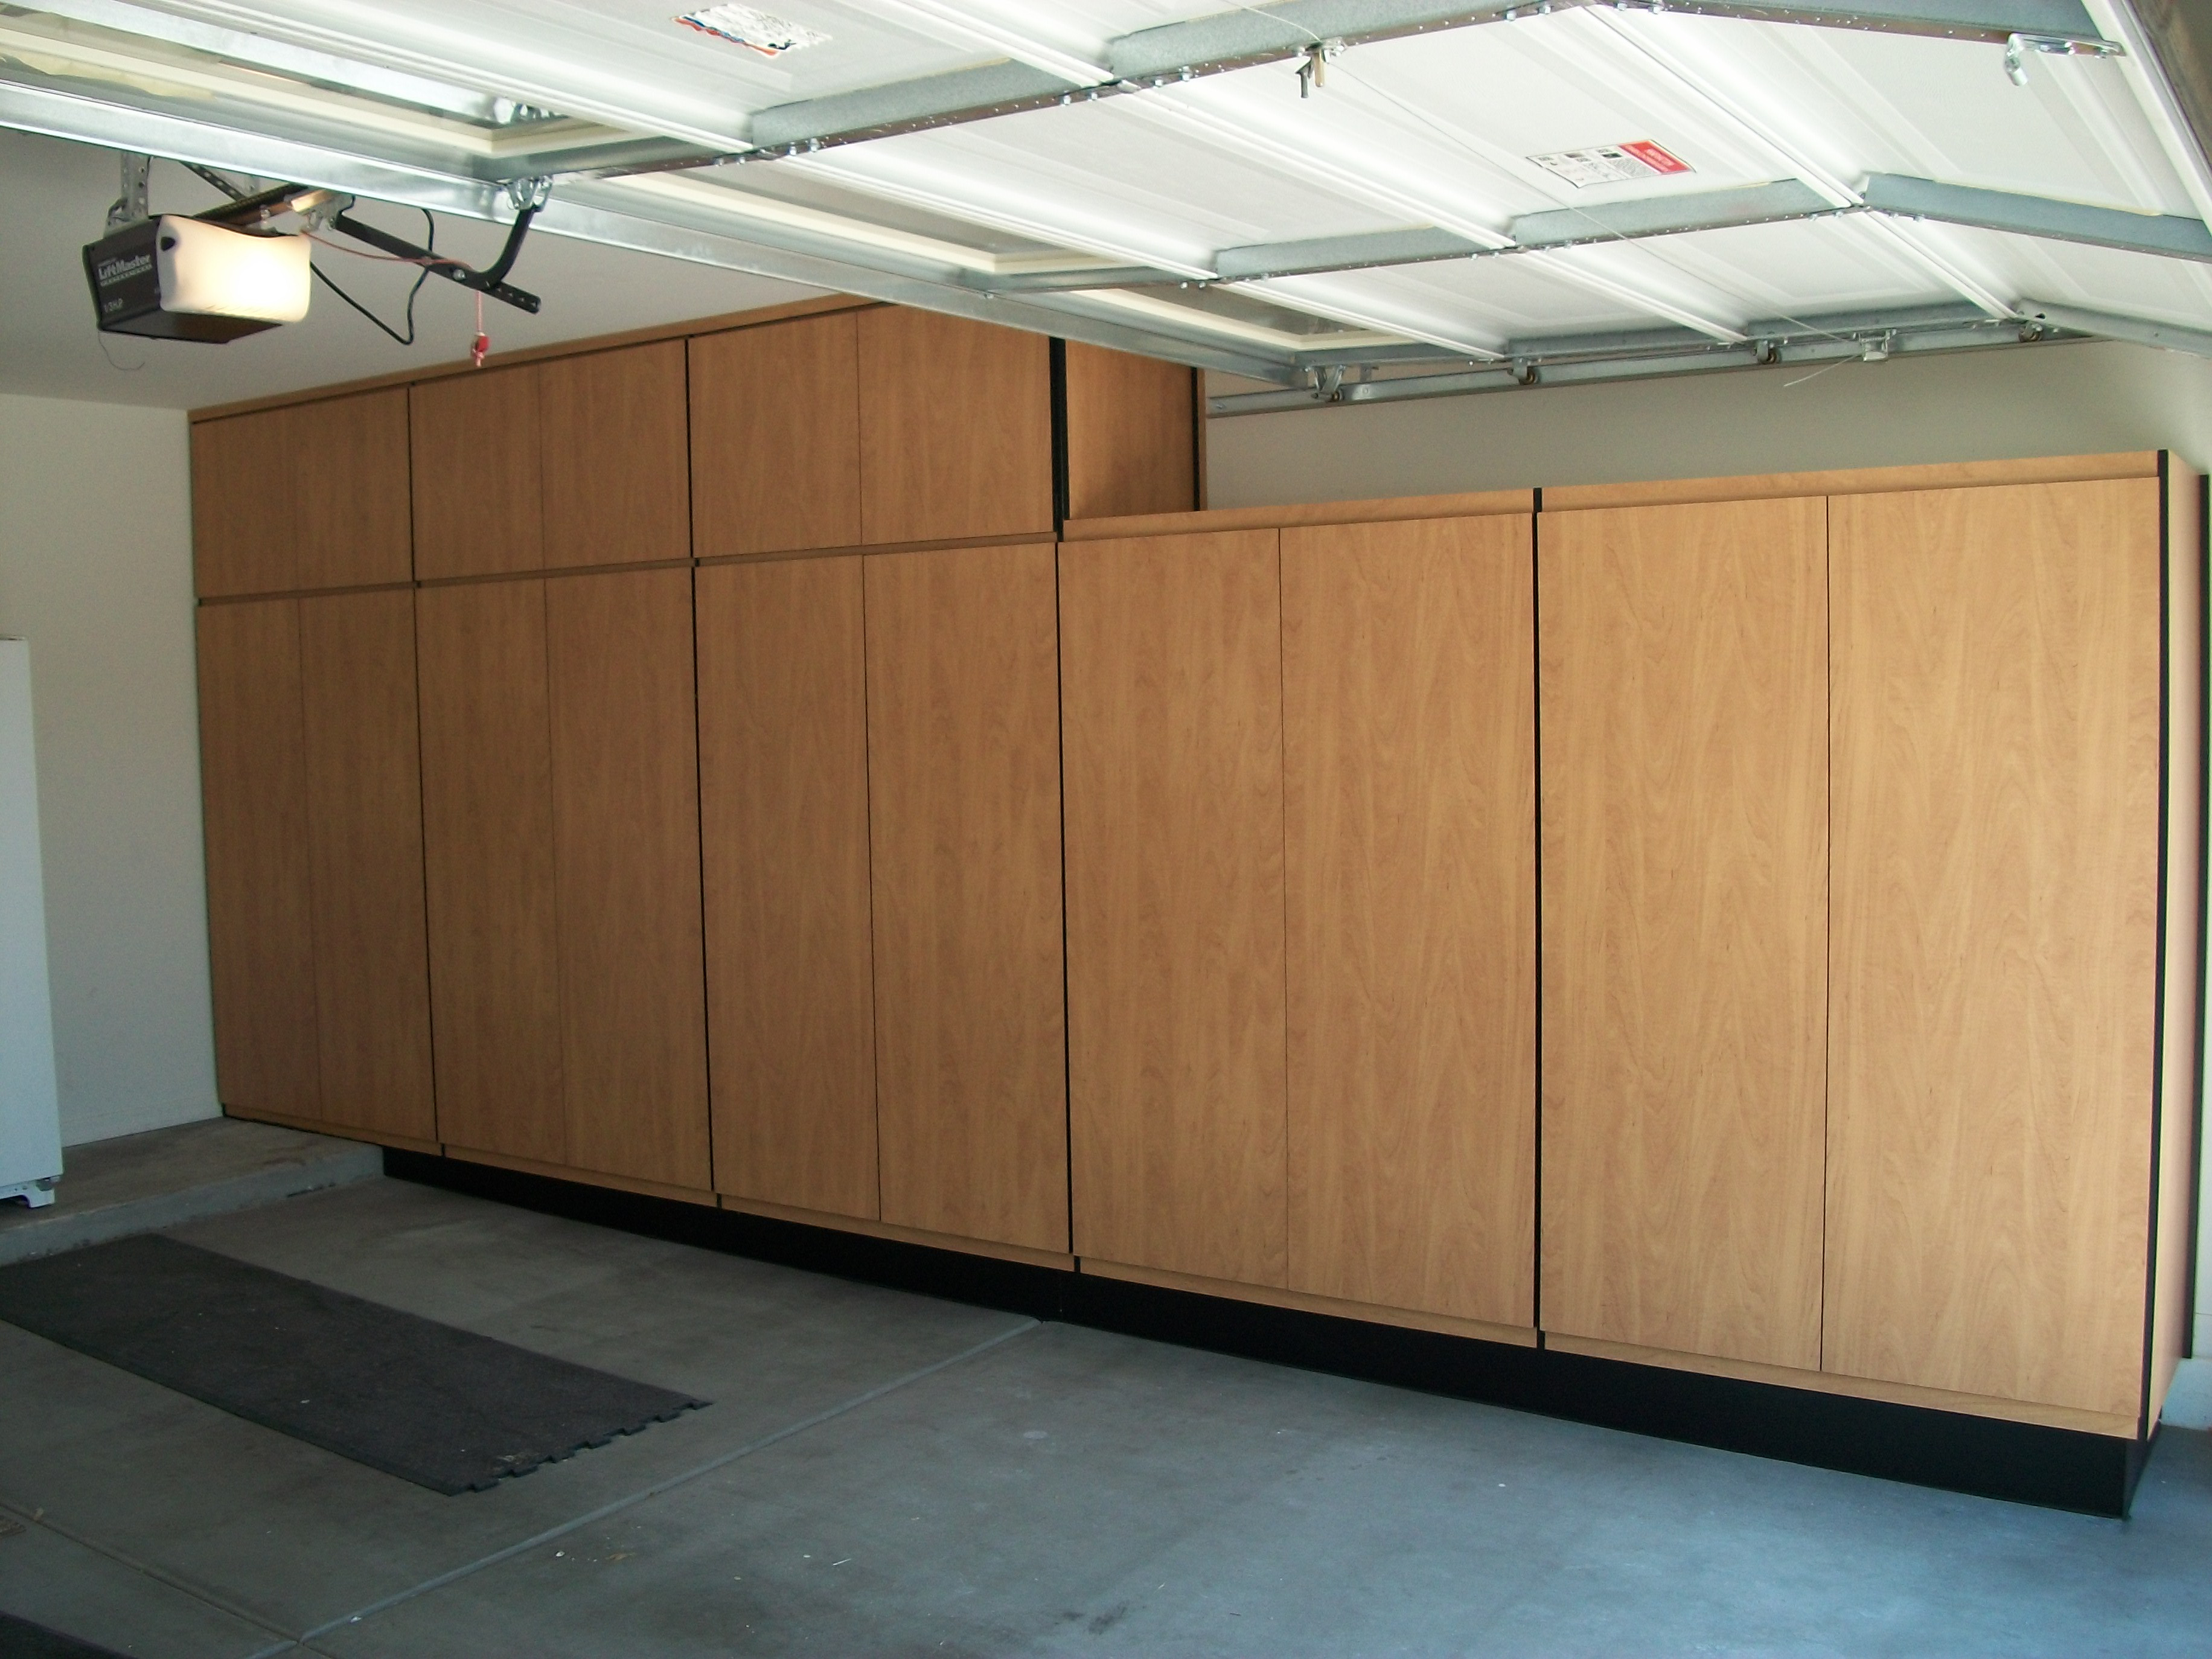 Best ideas about Wood Garage Storage Cabinets
. Save or Pin build wood garage cabinets Now.